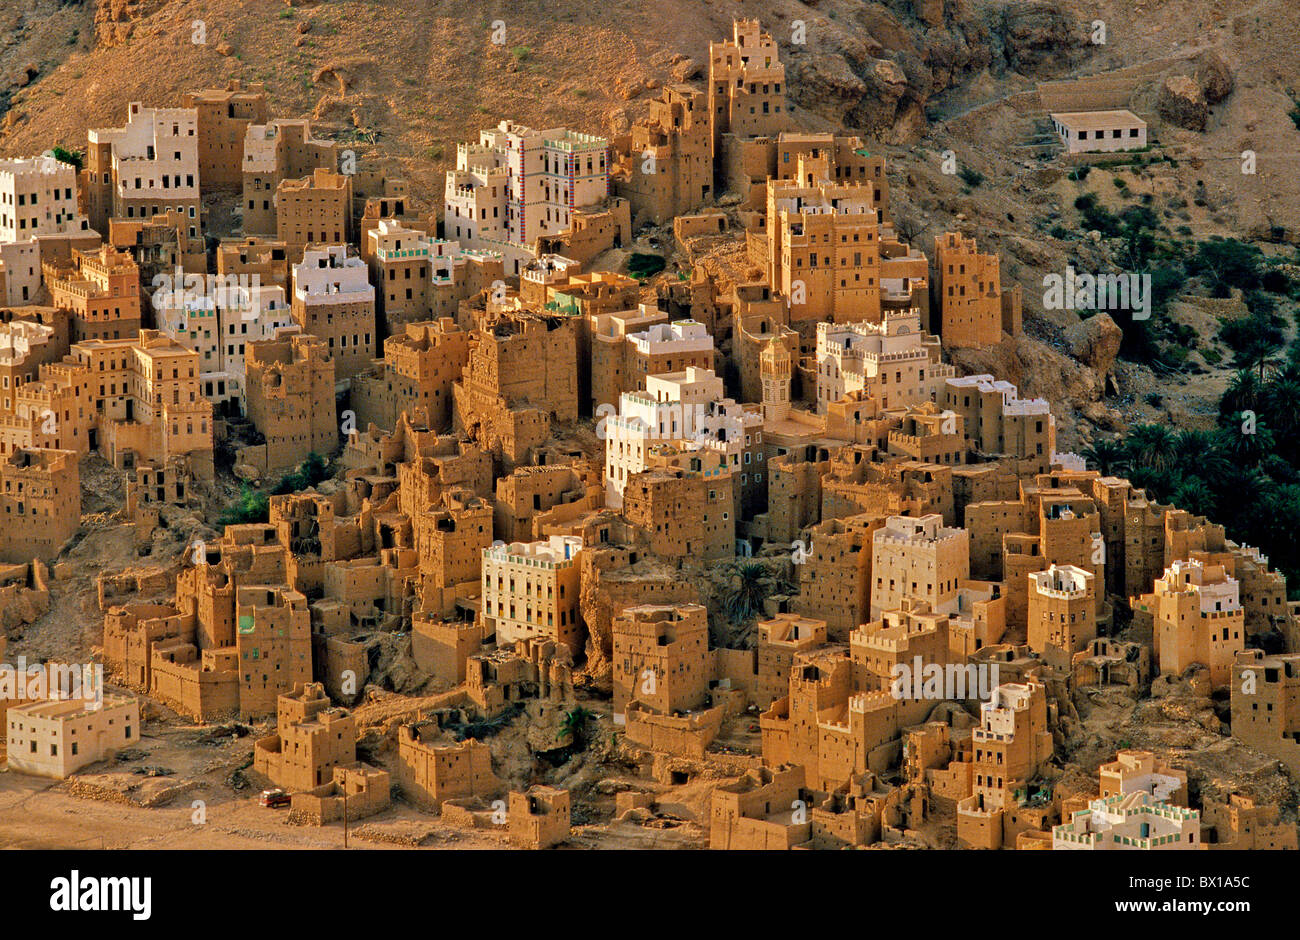 wadi-boqschan-hadramaut-yemen-arabia-orient-canyon-village-desert-BX1A5C.jpg